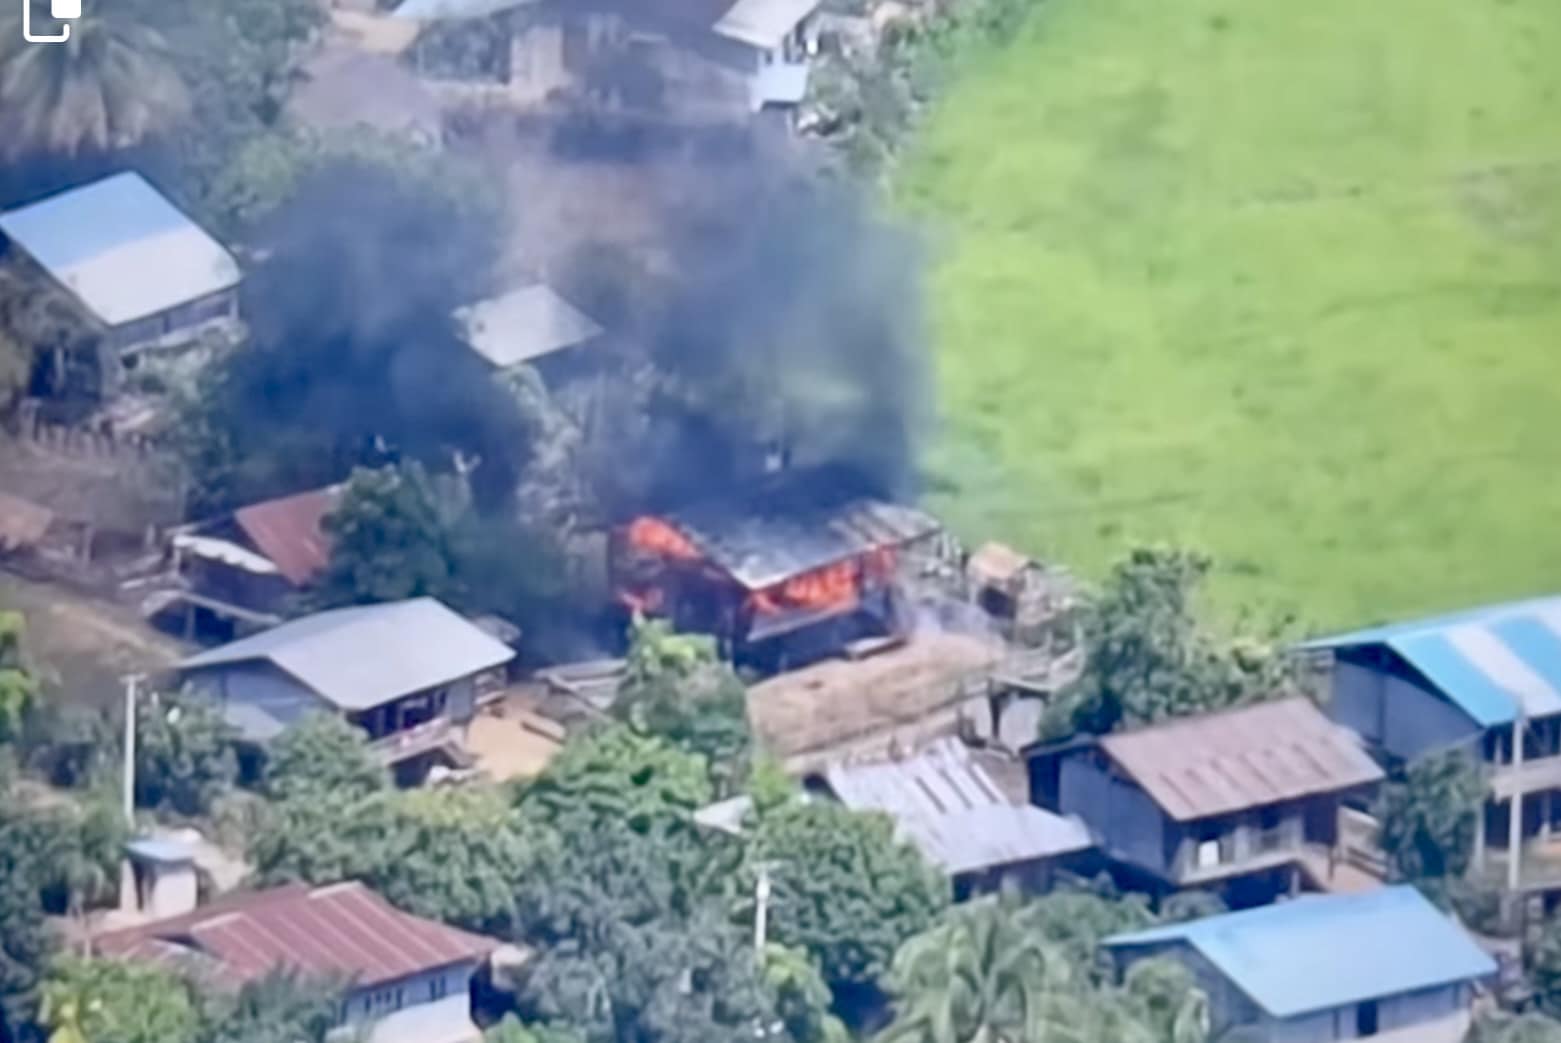 (ရွှေကူမြို့နယ် နတ်လန်ကျေးရွာရှိ နေအိမ်တစ်လုံးကို အကြမ်းဖက်စစ်ကောင်စီတပ် ခလရ(၇၇) က အကြောင်းမဲ့ မီးရှို့ဖျက်ဆီးခဲ့စဥ်)